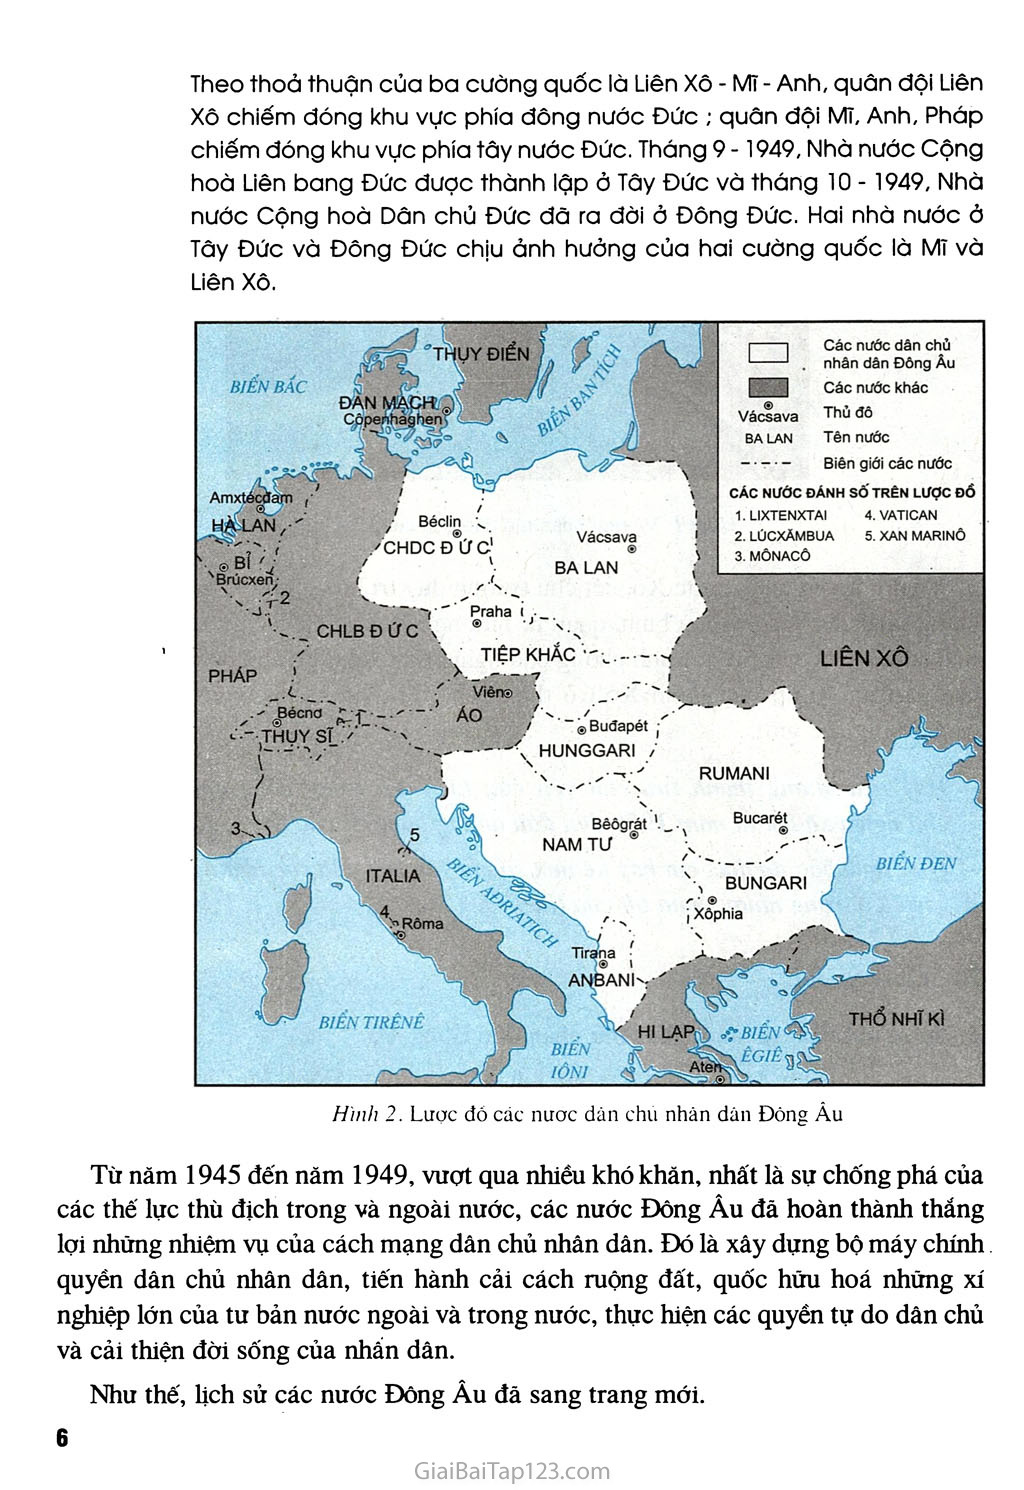 Bài 1 - Liên Xô và các nước Đông Âu từ năm 1945 đến giữa những năm 70 của thế kỉ XX trang 4